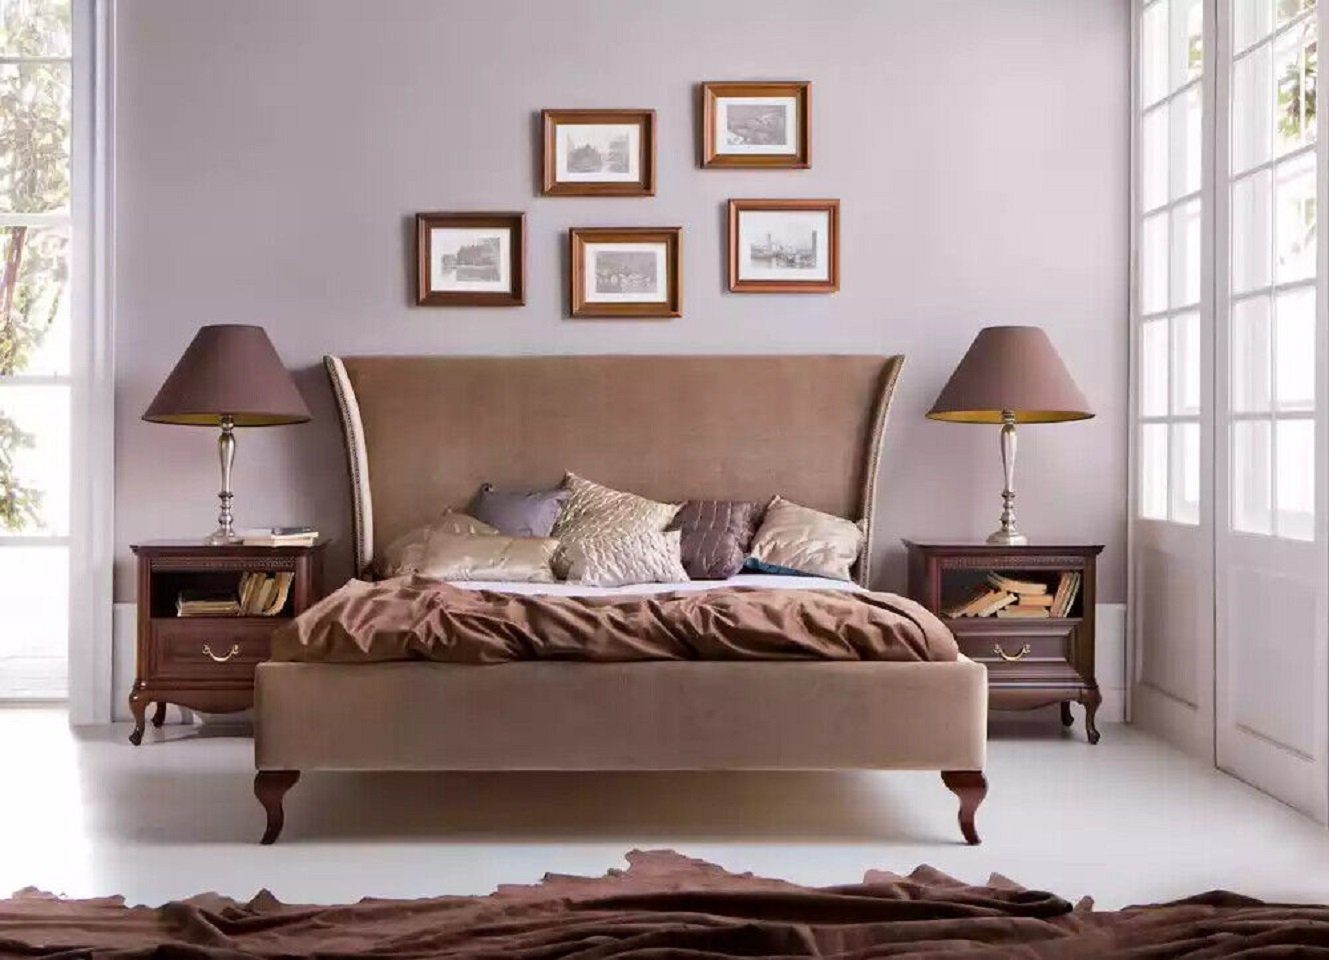 Holz Betten Neu Bett in Bett), (1-tlg., Hotel JVmoebel Made Luxus Möbel Polster Europe Design Bett Barock